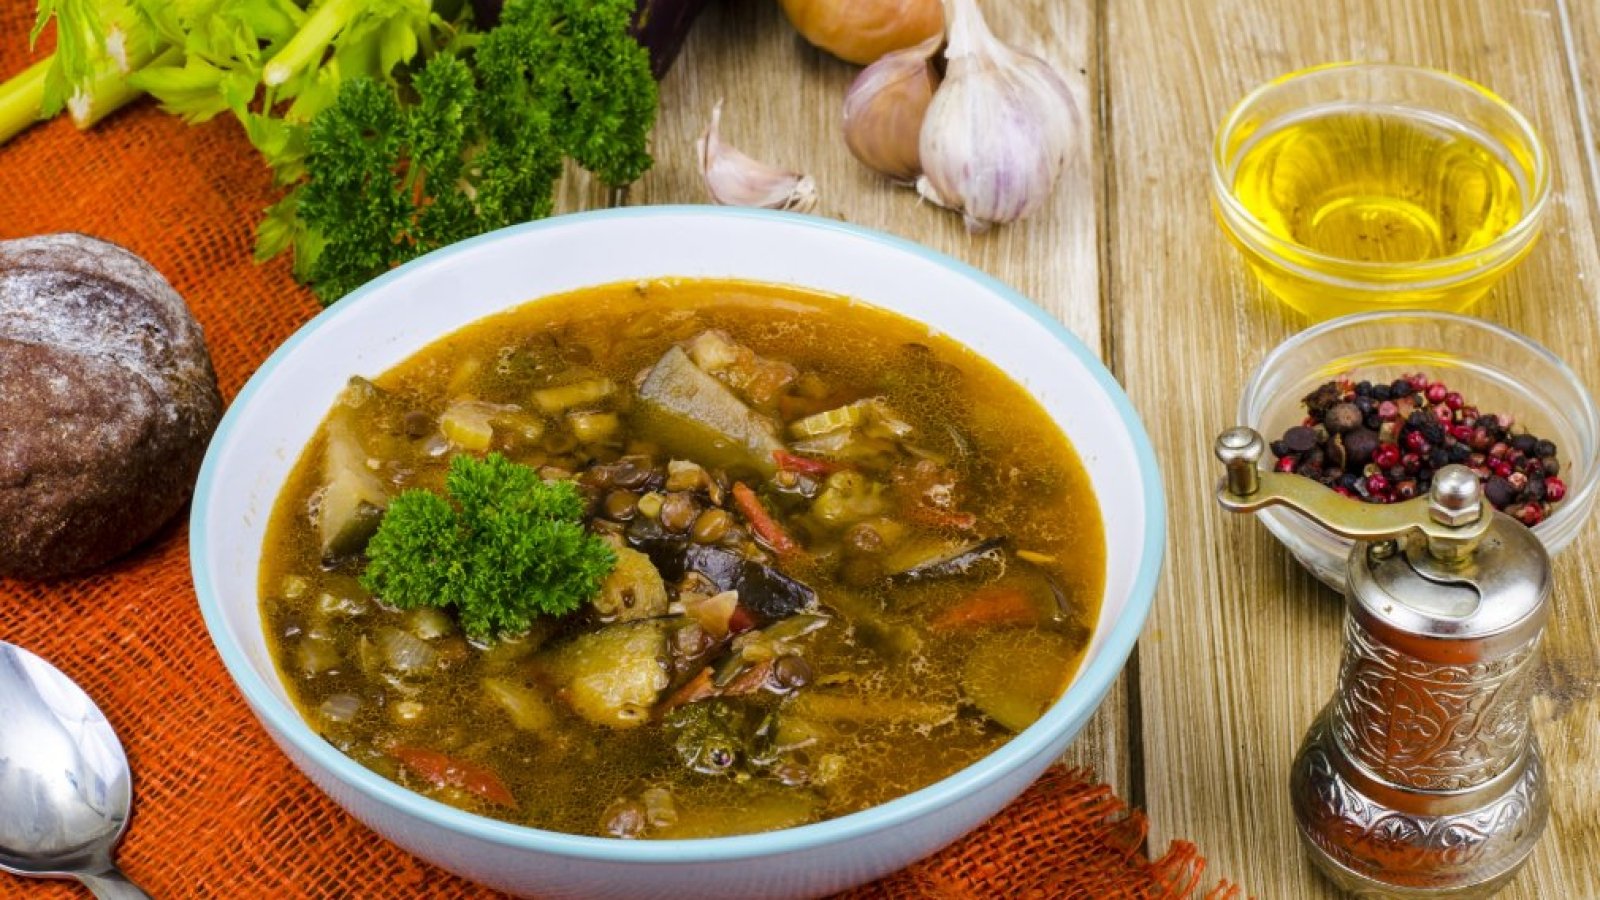 Суп из чечевицы с грибами, пошаговый рецепт на ккал, фото, ингредиенты - Юлия Высоцкая